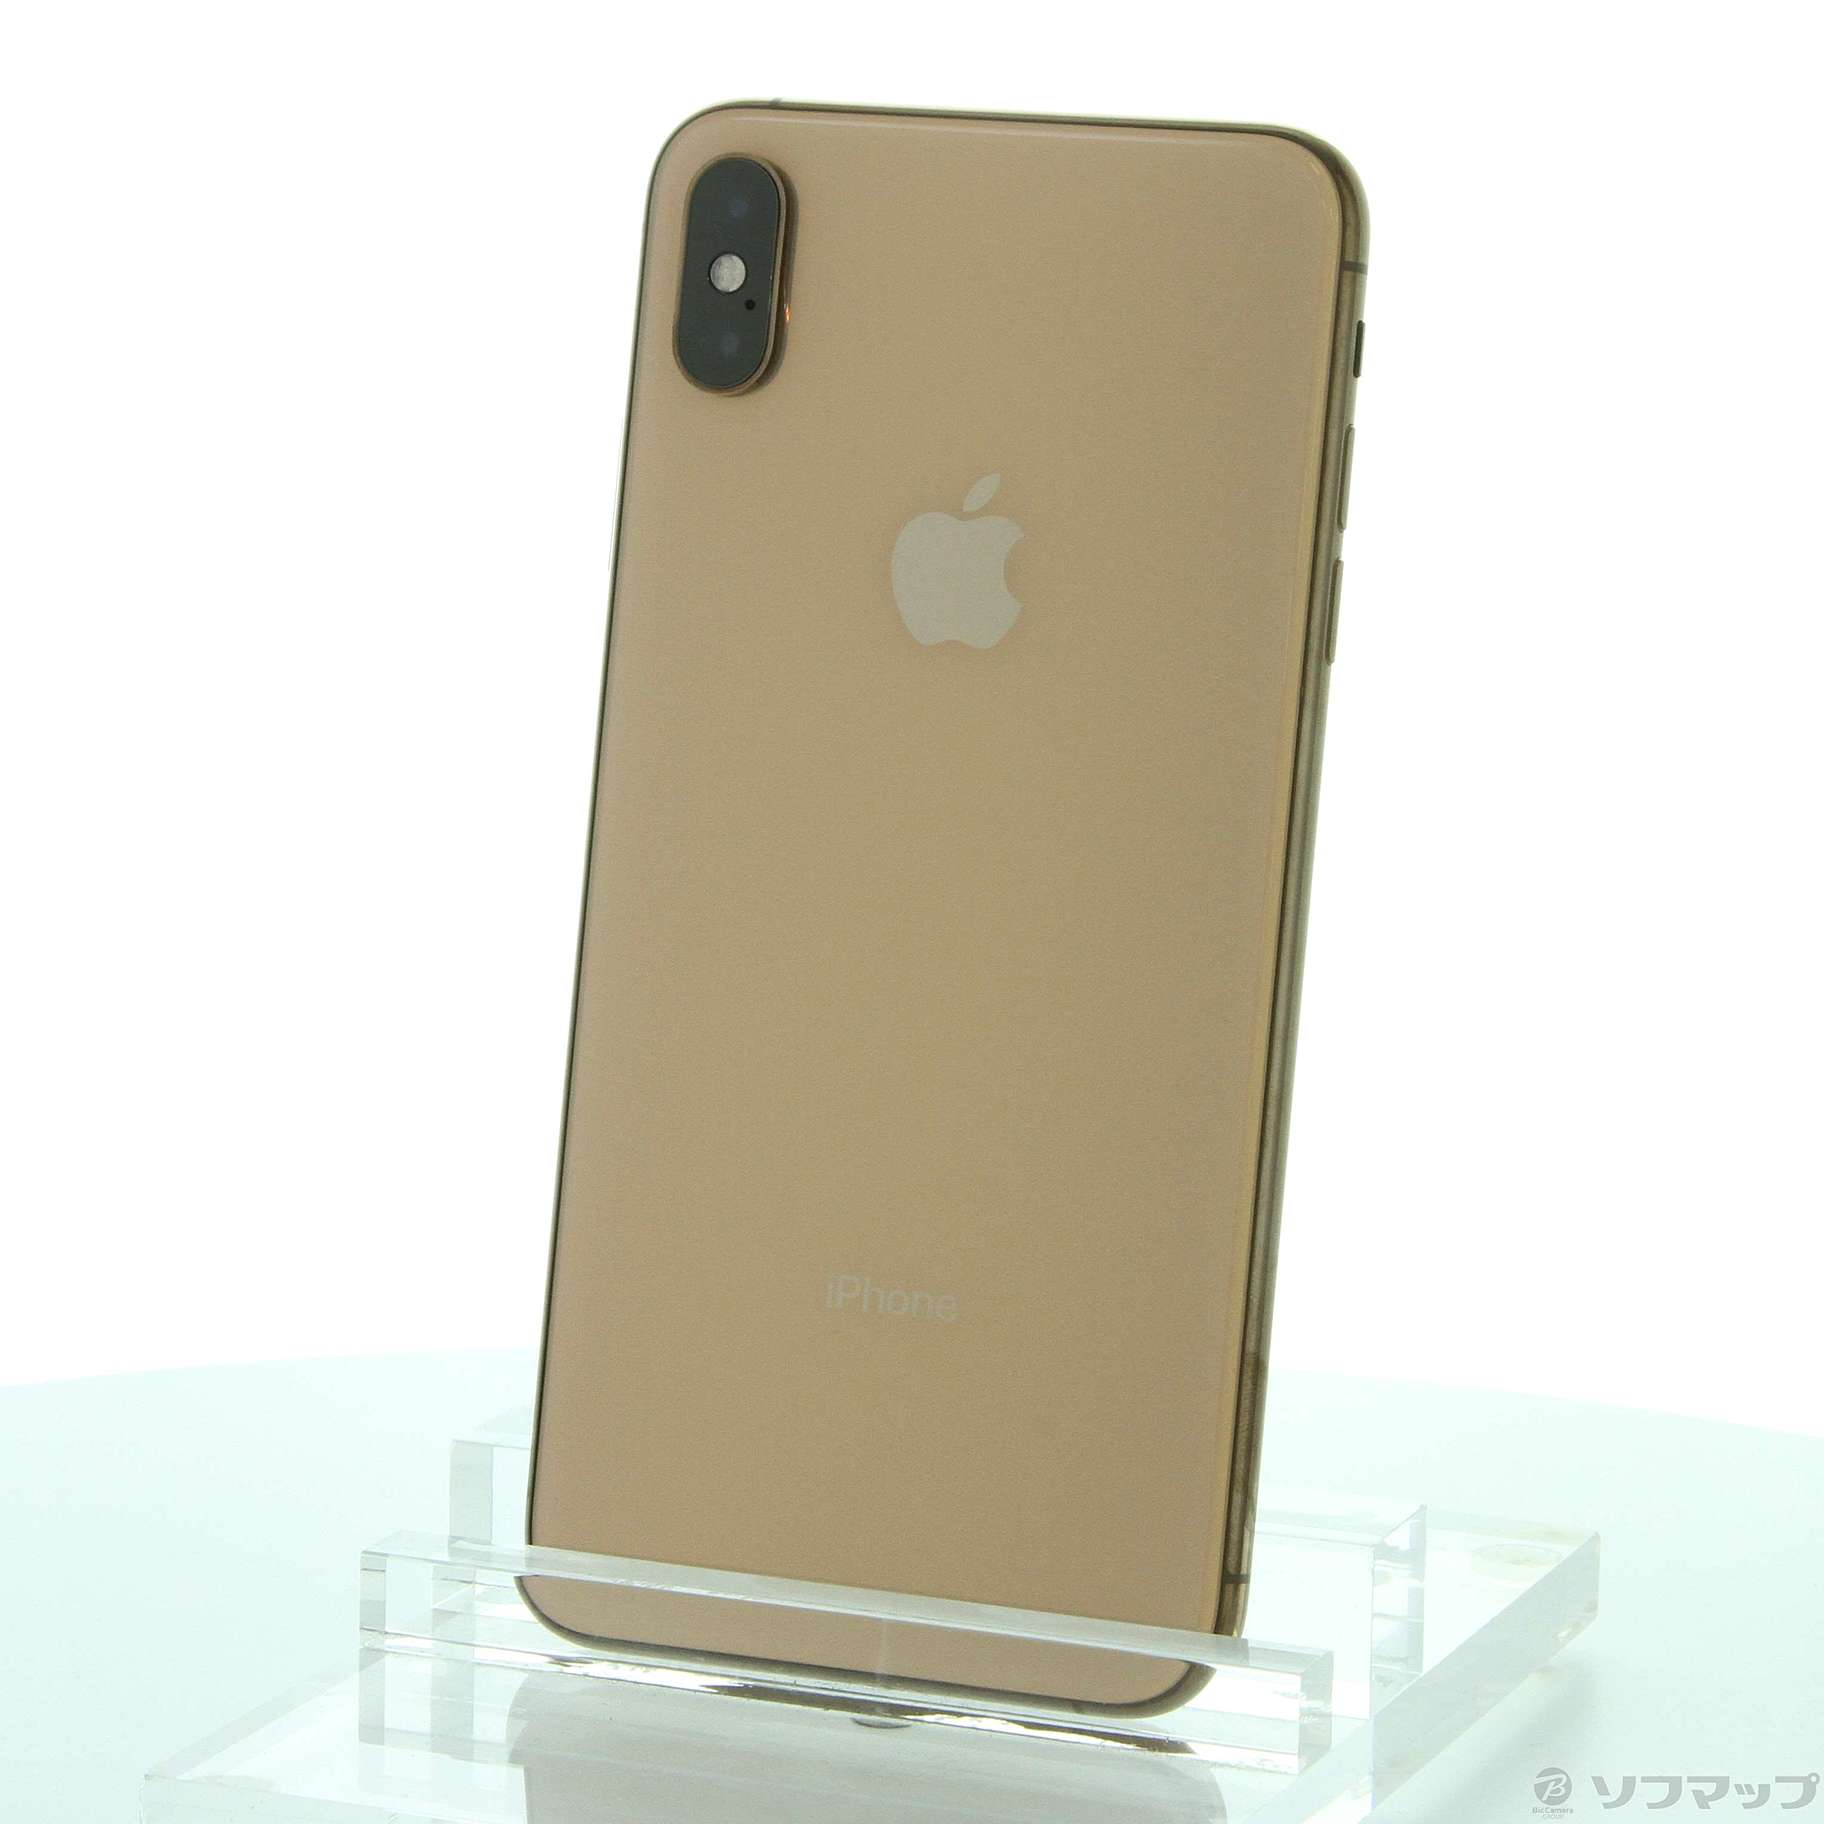 スマホ【強化ガラス付】iPhoneXs Gold 256GB SIMフリー 